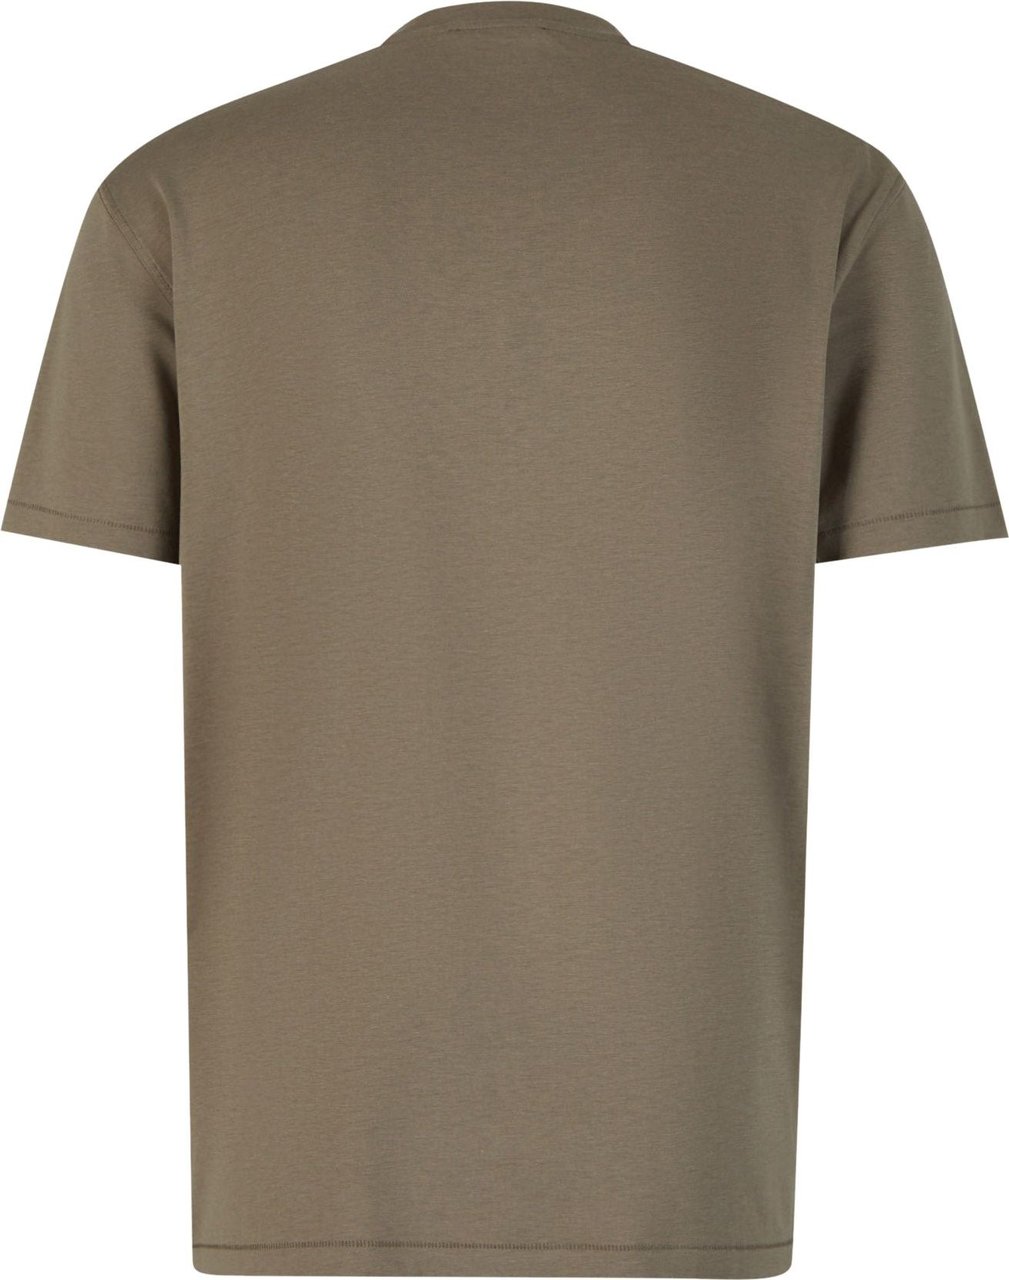 Tom Ford Plain T-Shirt Groen